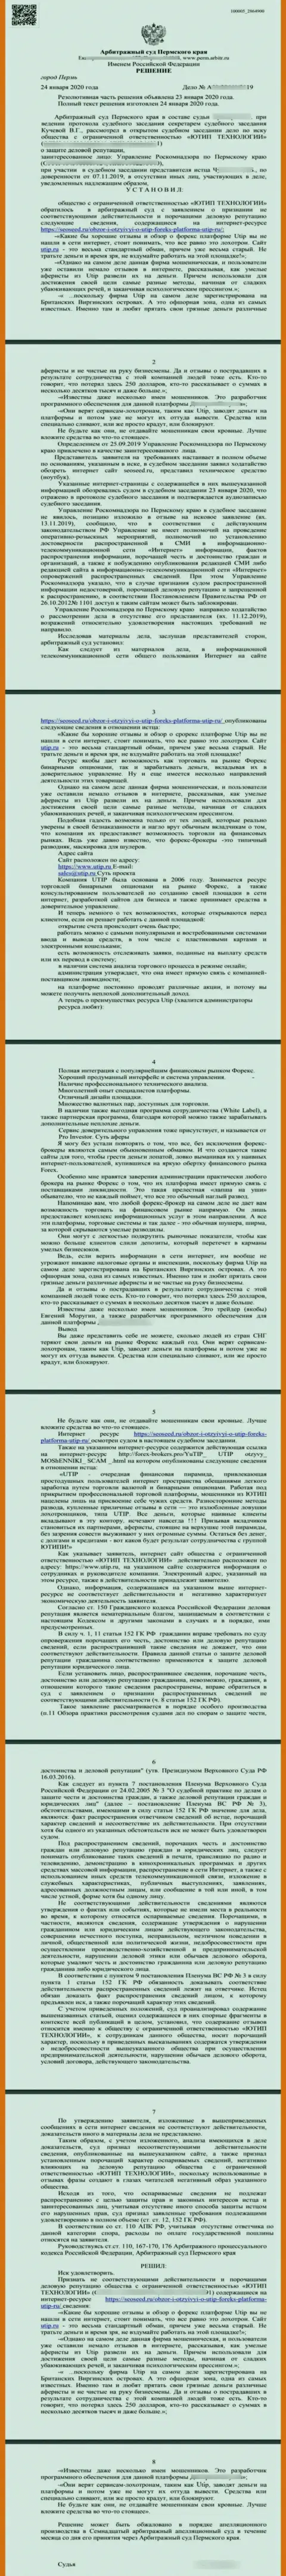 Судебный иск мошенников UTIP Ru, который был удовлетворен самым справедливым судом в мире